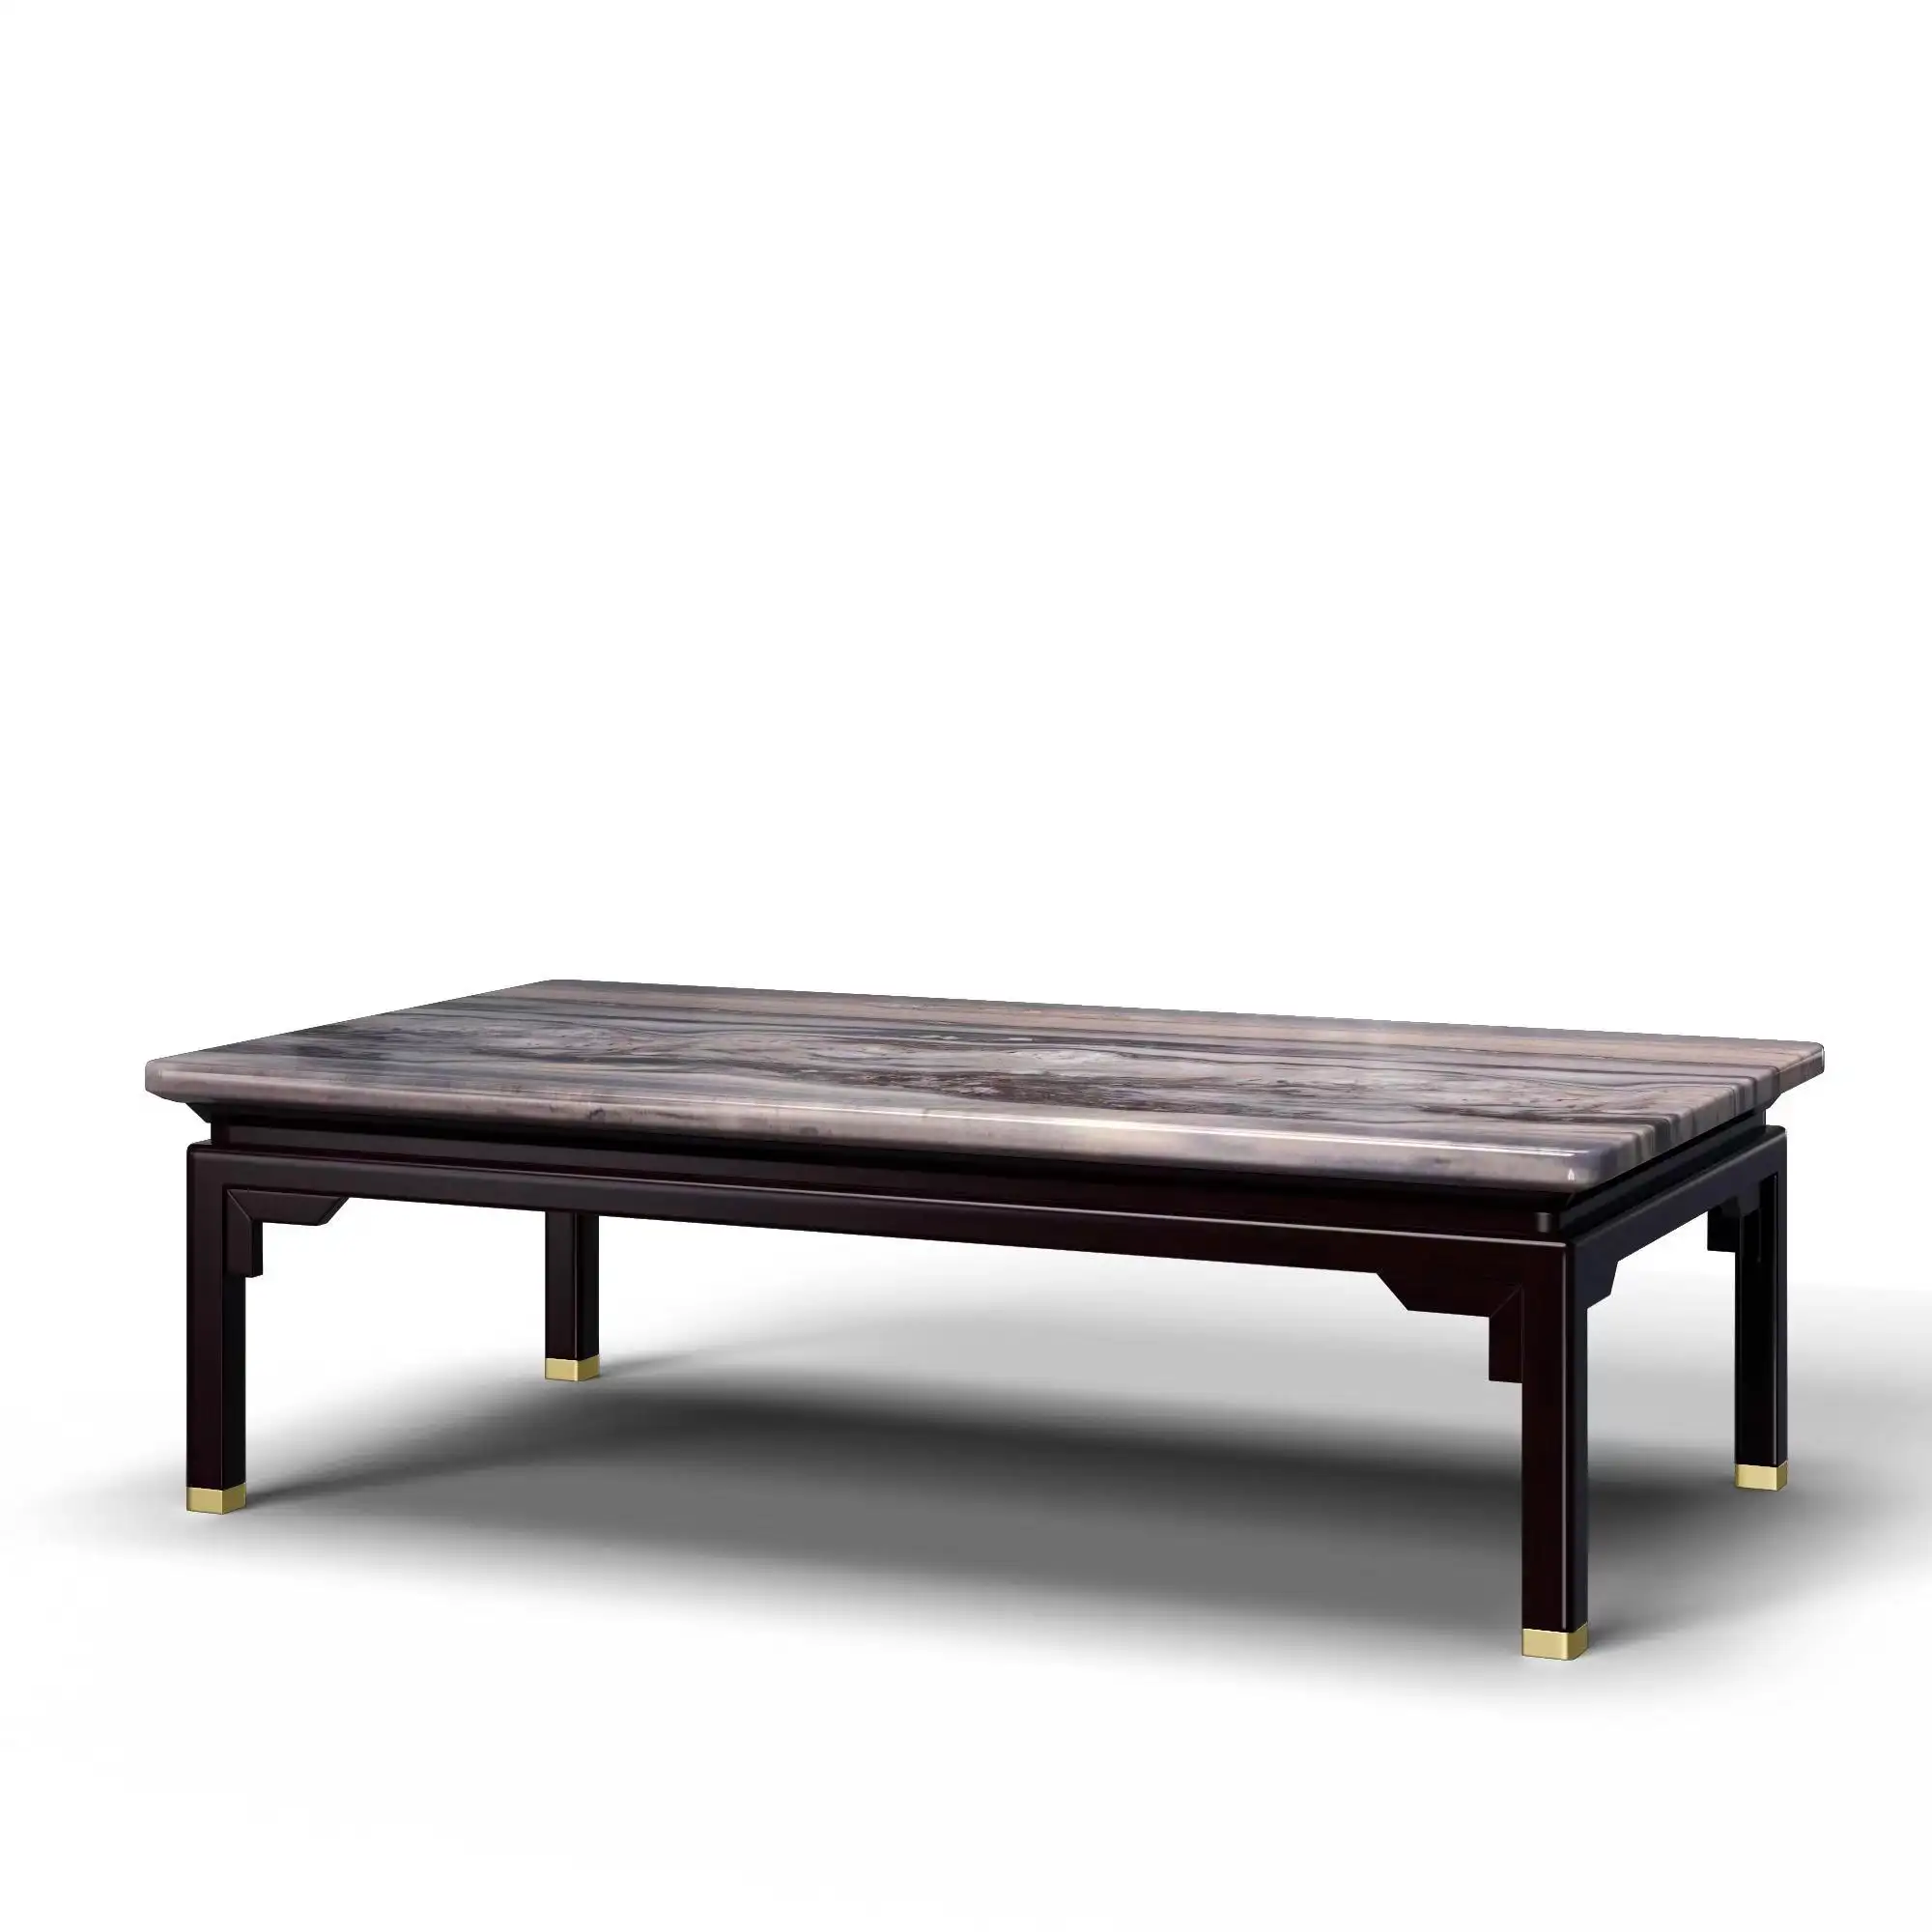 Tables en bois de luxe personnalisées avec table en marbreStar Hotel Furniture